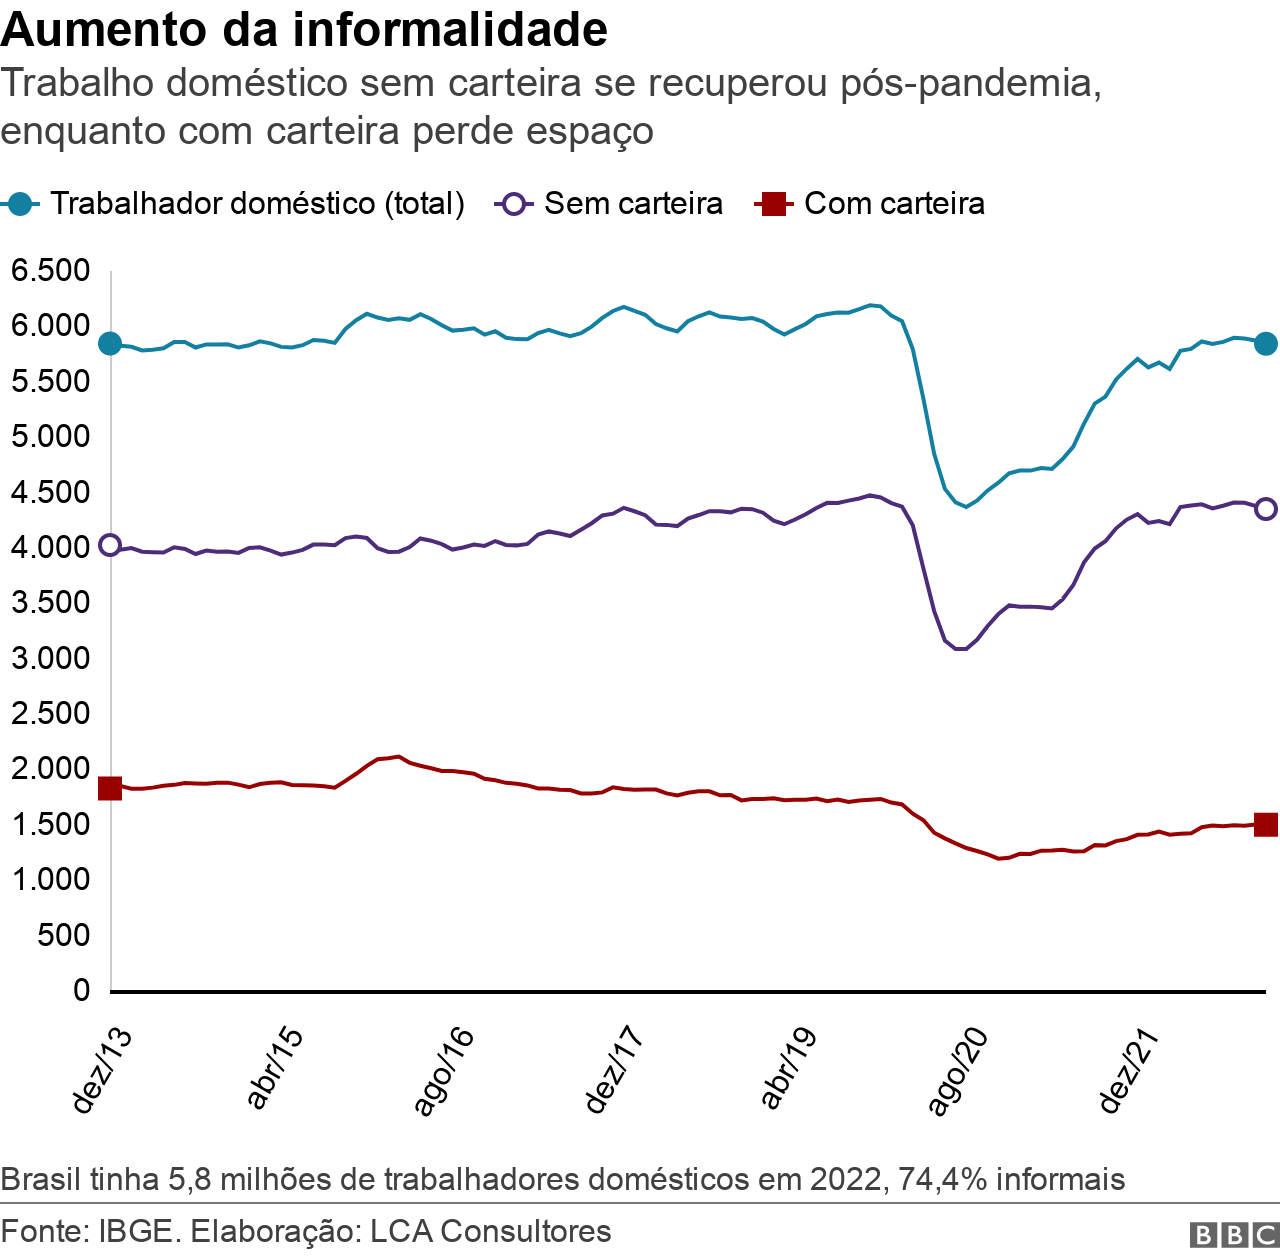 Grafico de linhas mostra evolução do número de trabalhadores domésticos no Brasil entre dezembro de 2013 e dezembro de 2022